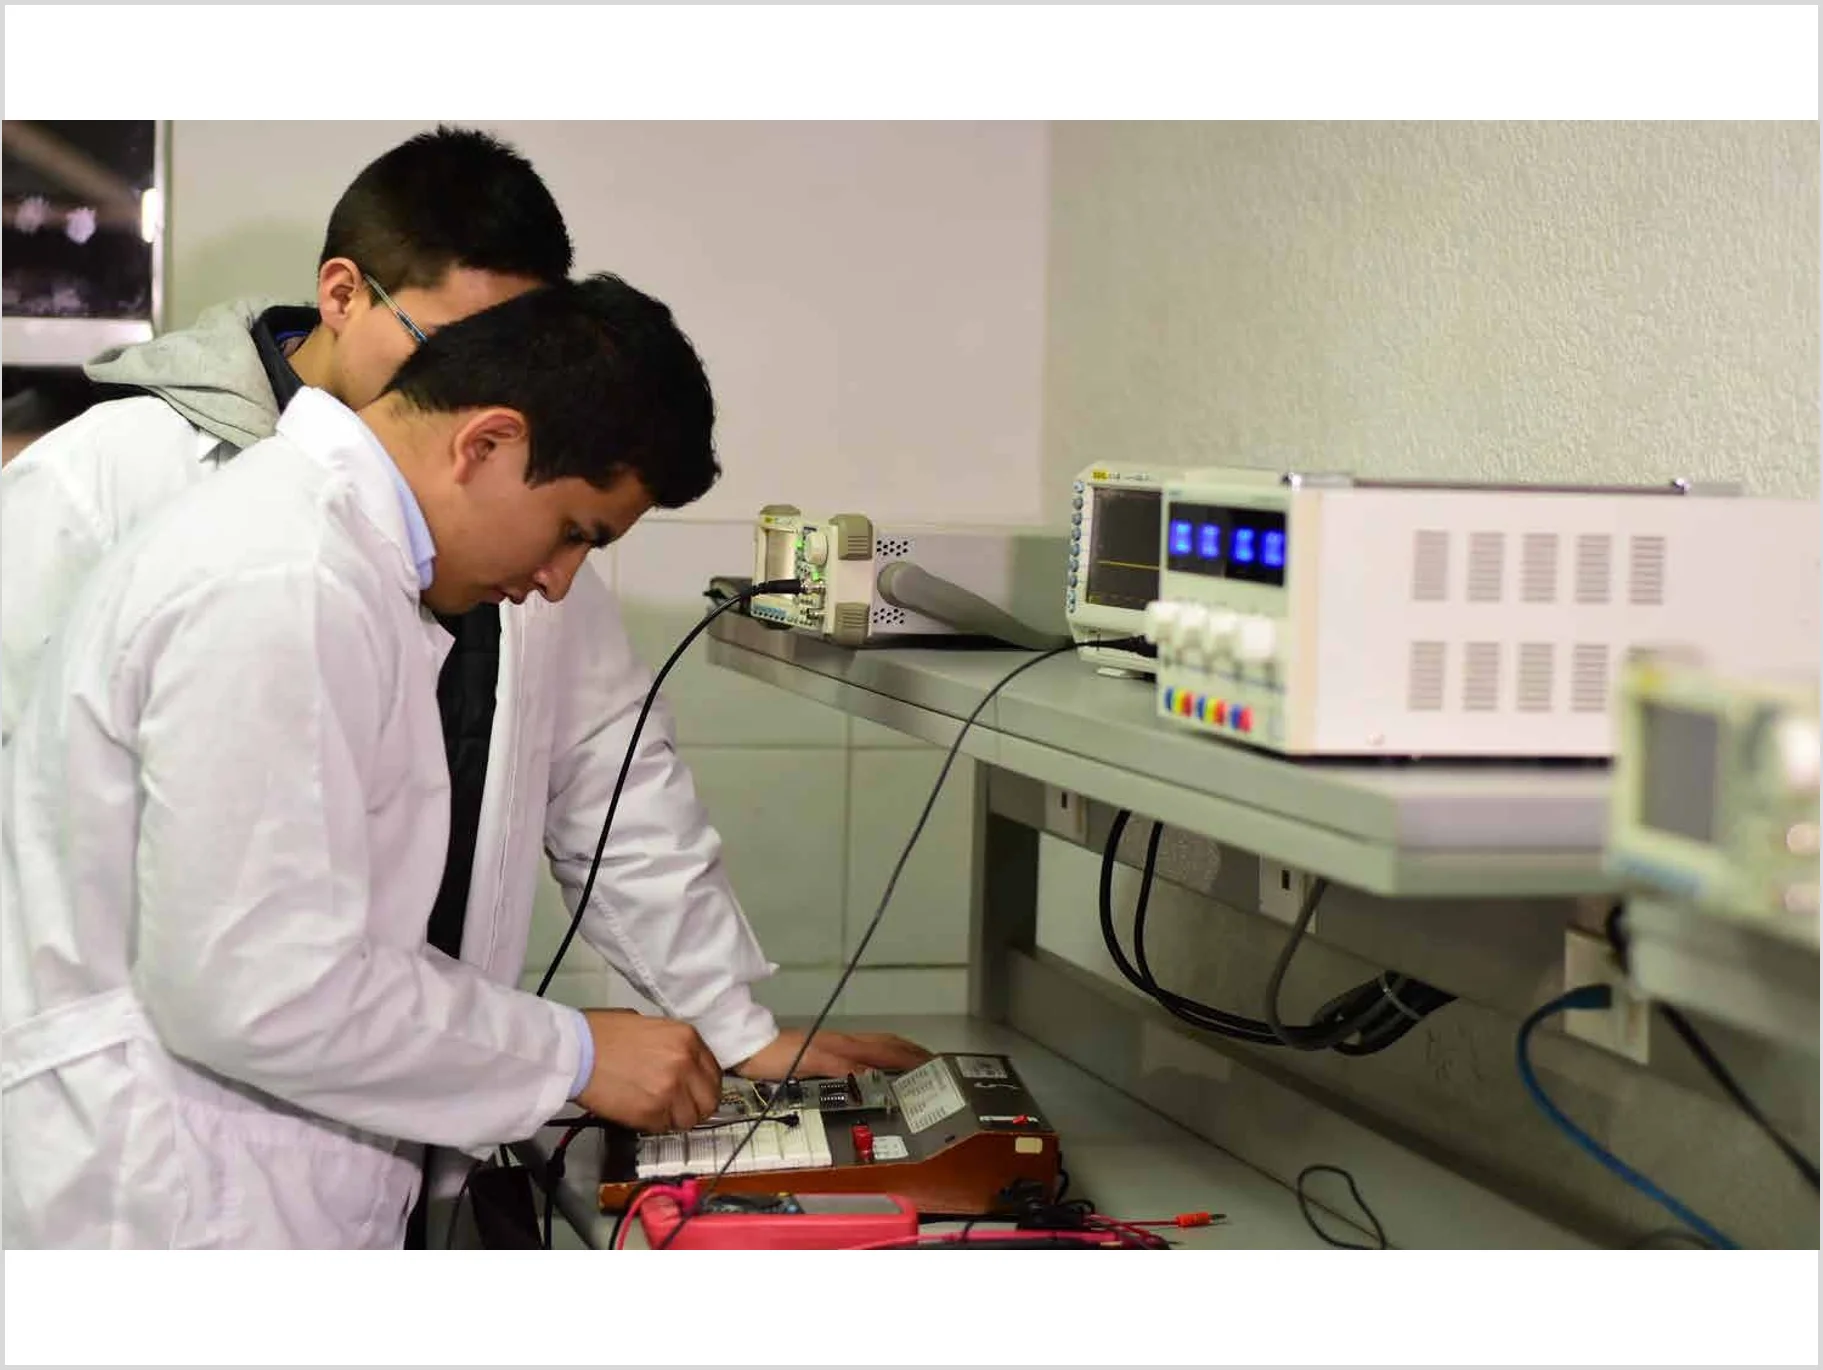 laboratorio telecomunicaciones universidad cooperativa de Colombia en bogota